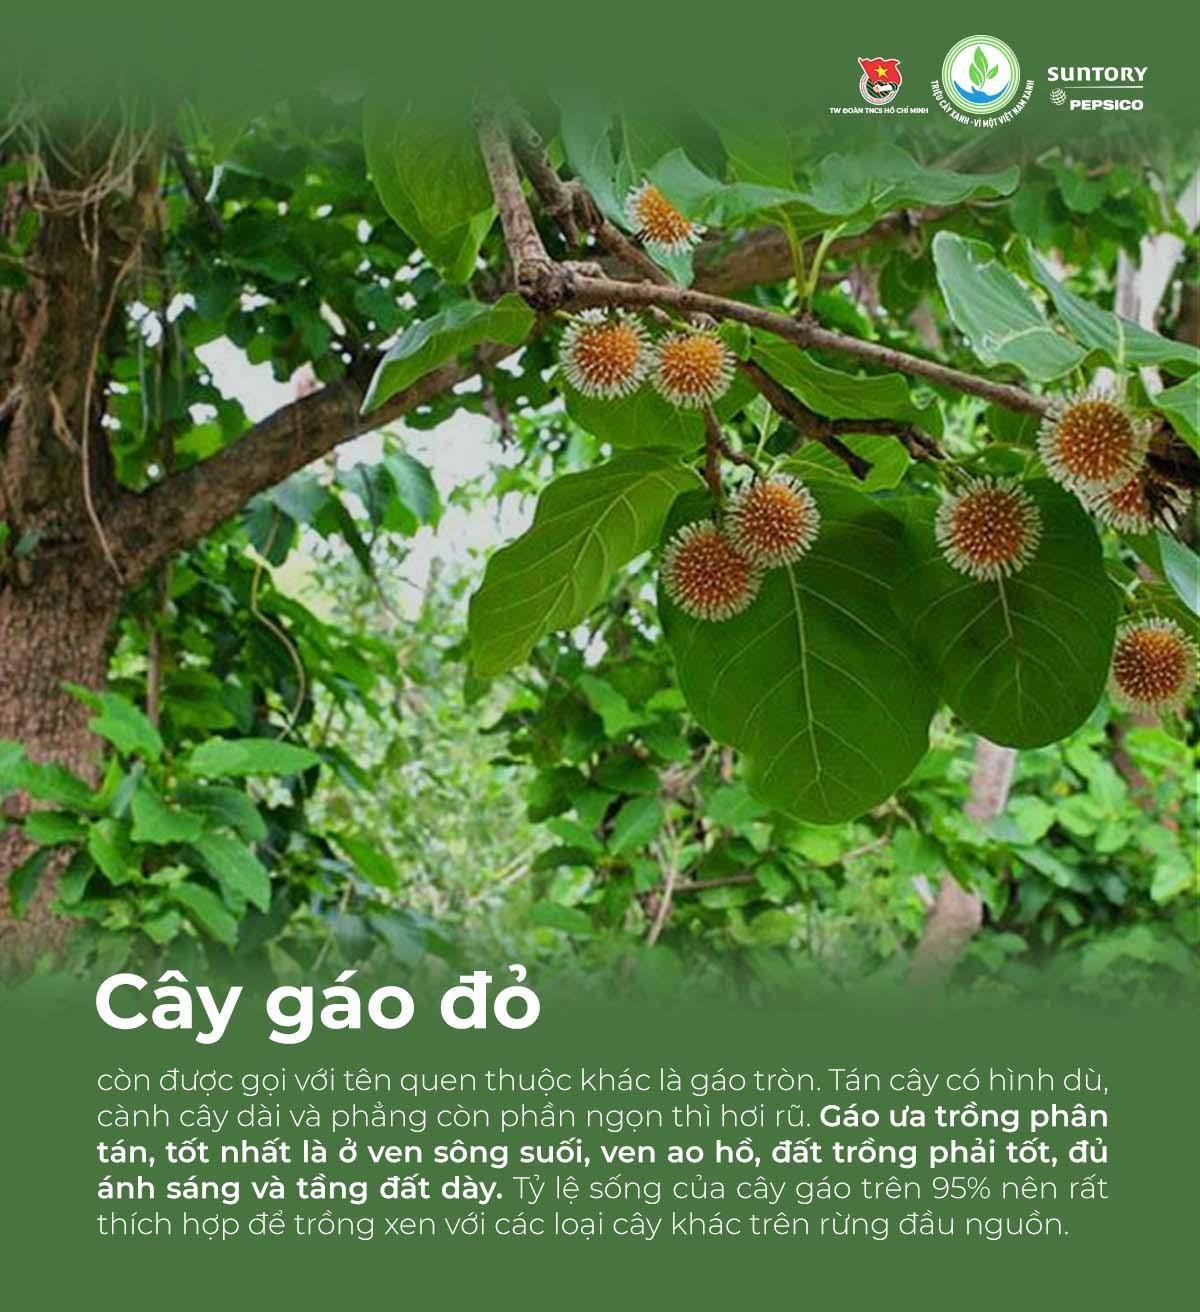 Giải mã các loại cây bản địa được chọn gieo mầm trong chương trình &quot;Triệu cây xanh - Vì một Việt Nam xanh&quot; - Ảnh 7.